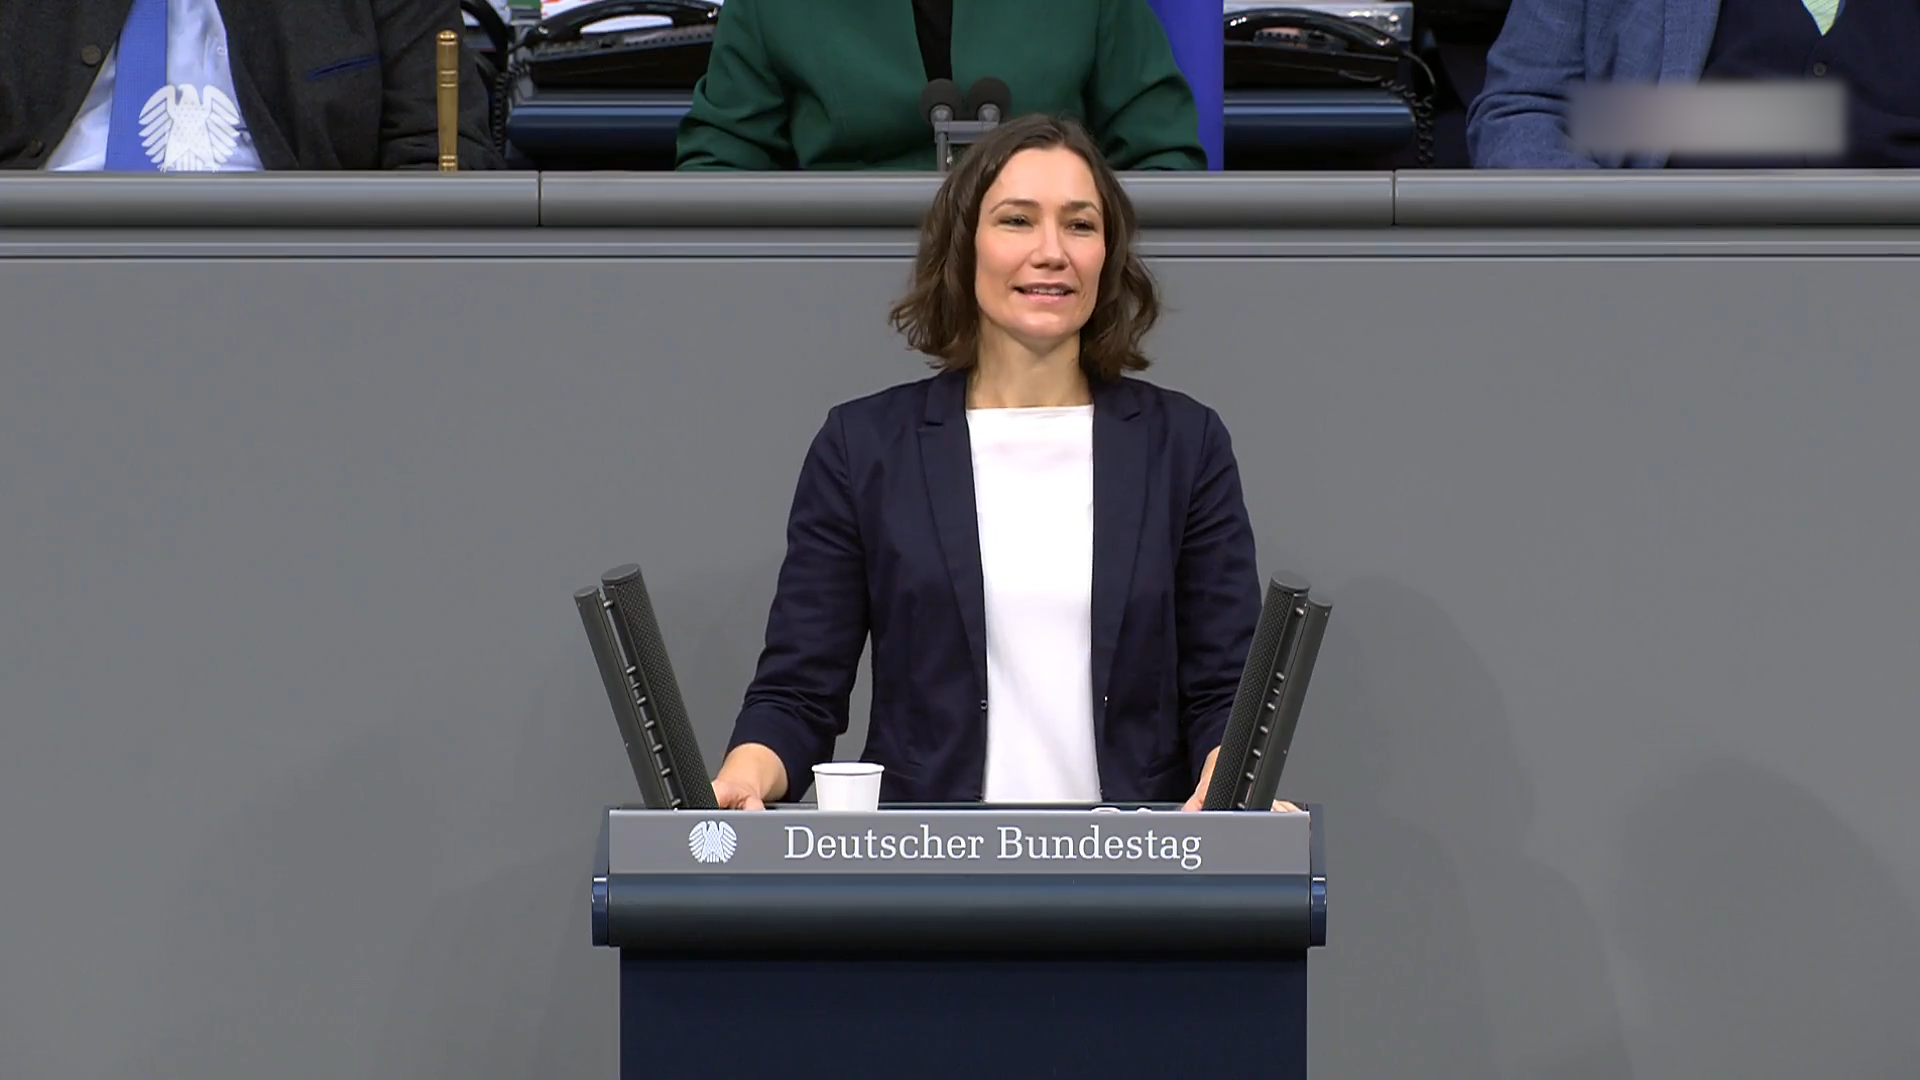 Bundesfamilienministerin Anne Spiegel spricht am Pult im Bundestag